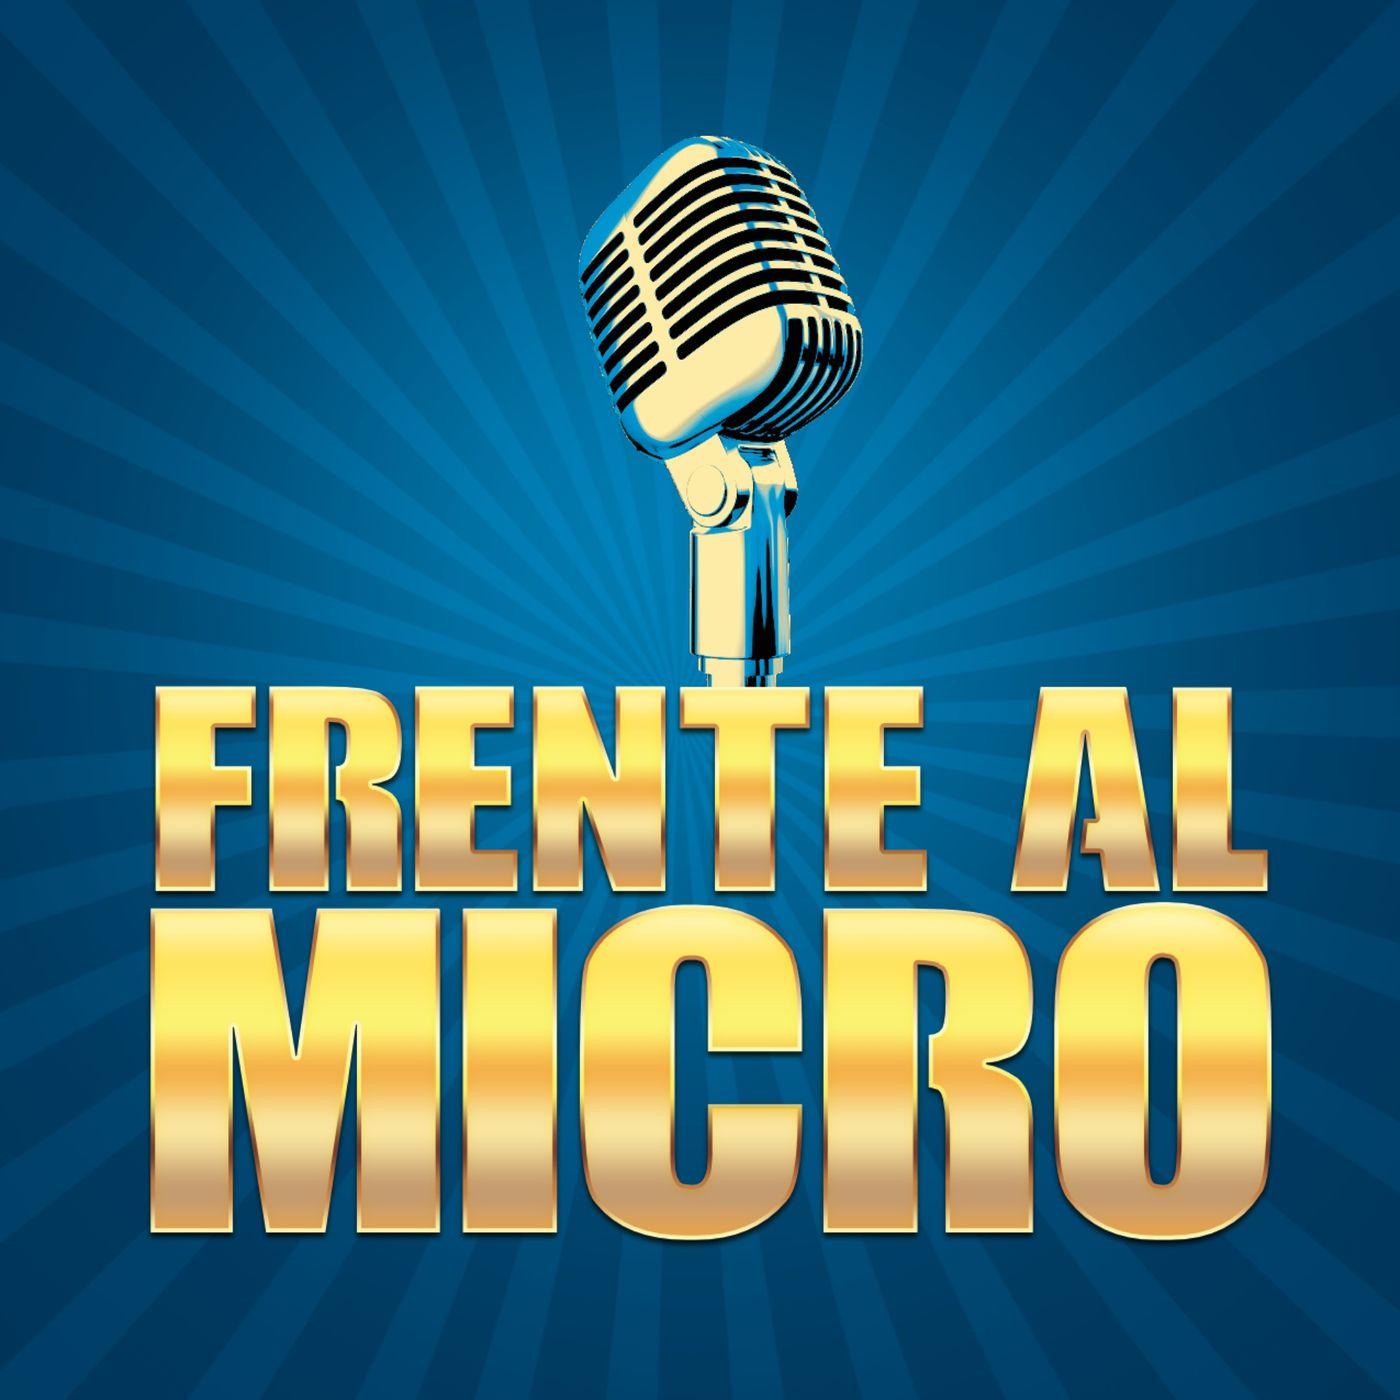 Frente al micro: voz y comunicación en español